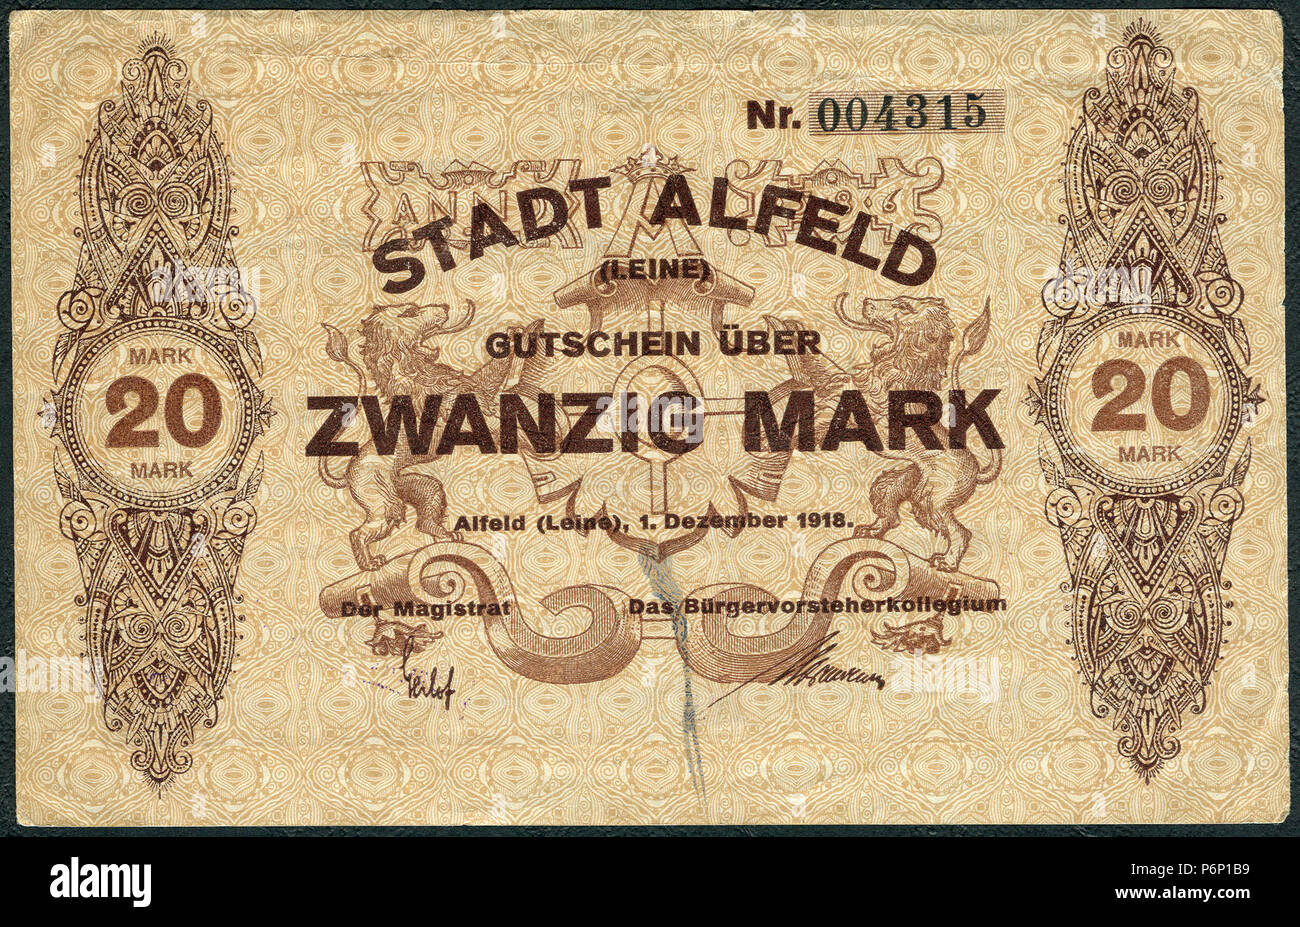 1918-12-01 Stadt Alfeld (Leine) Gutschein über 20 Mark Unterschrift Der Magistrat Das Bürgervorsteherkollegium. Stock Photo